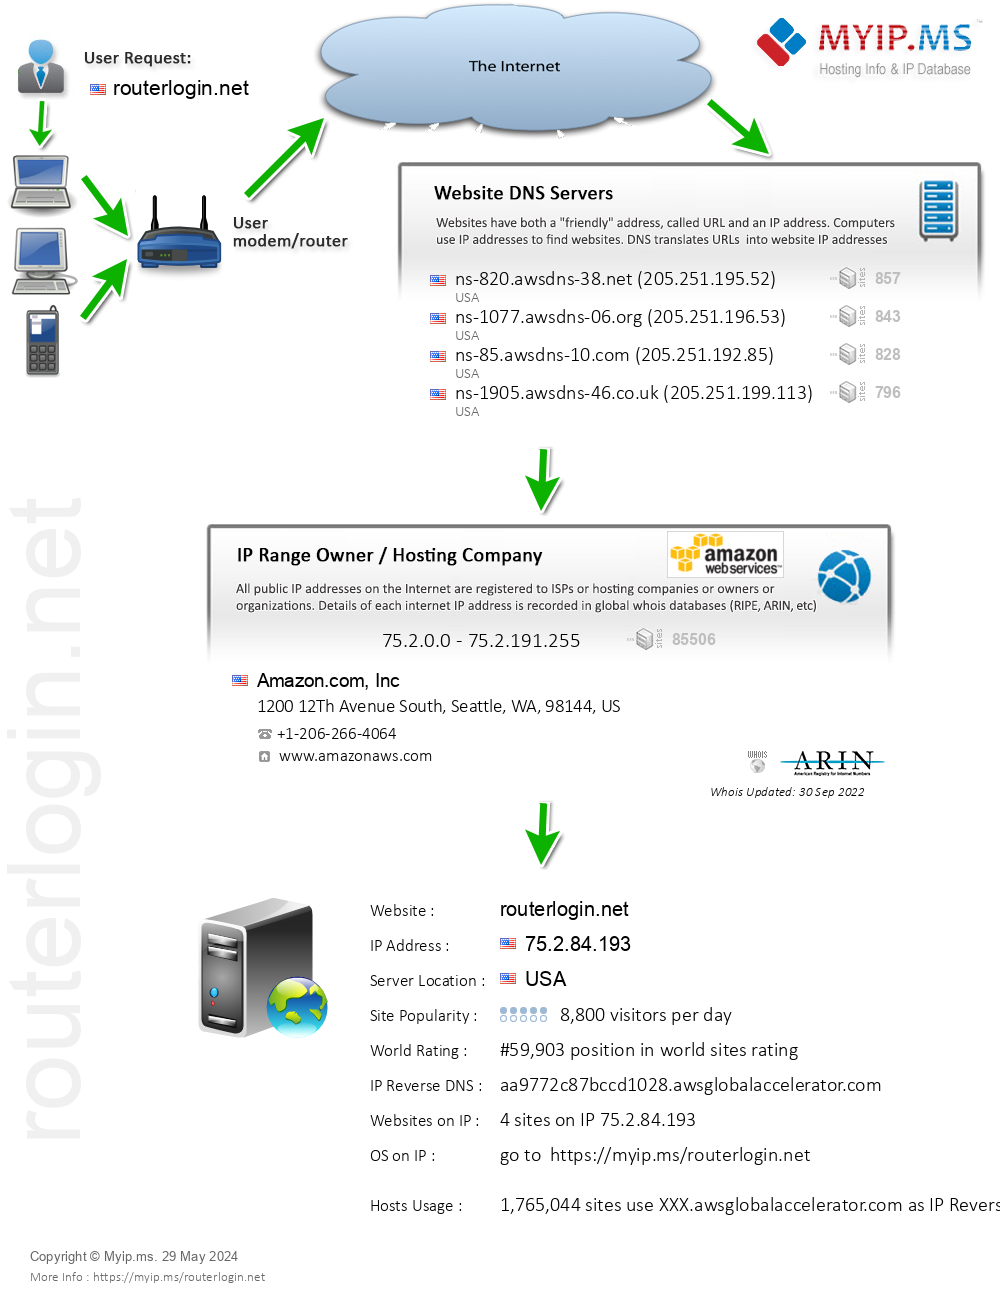 Routerlogin.net - Website Hosting Visual IP Diagram